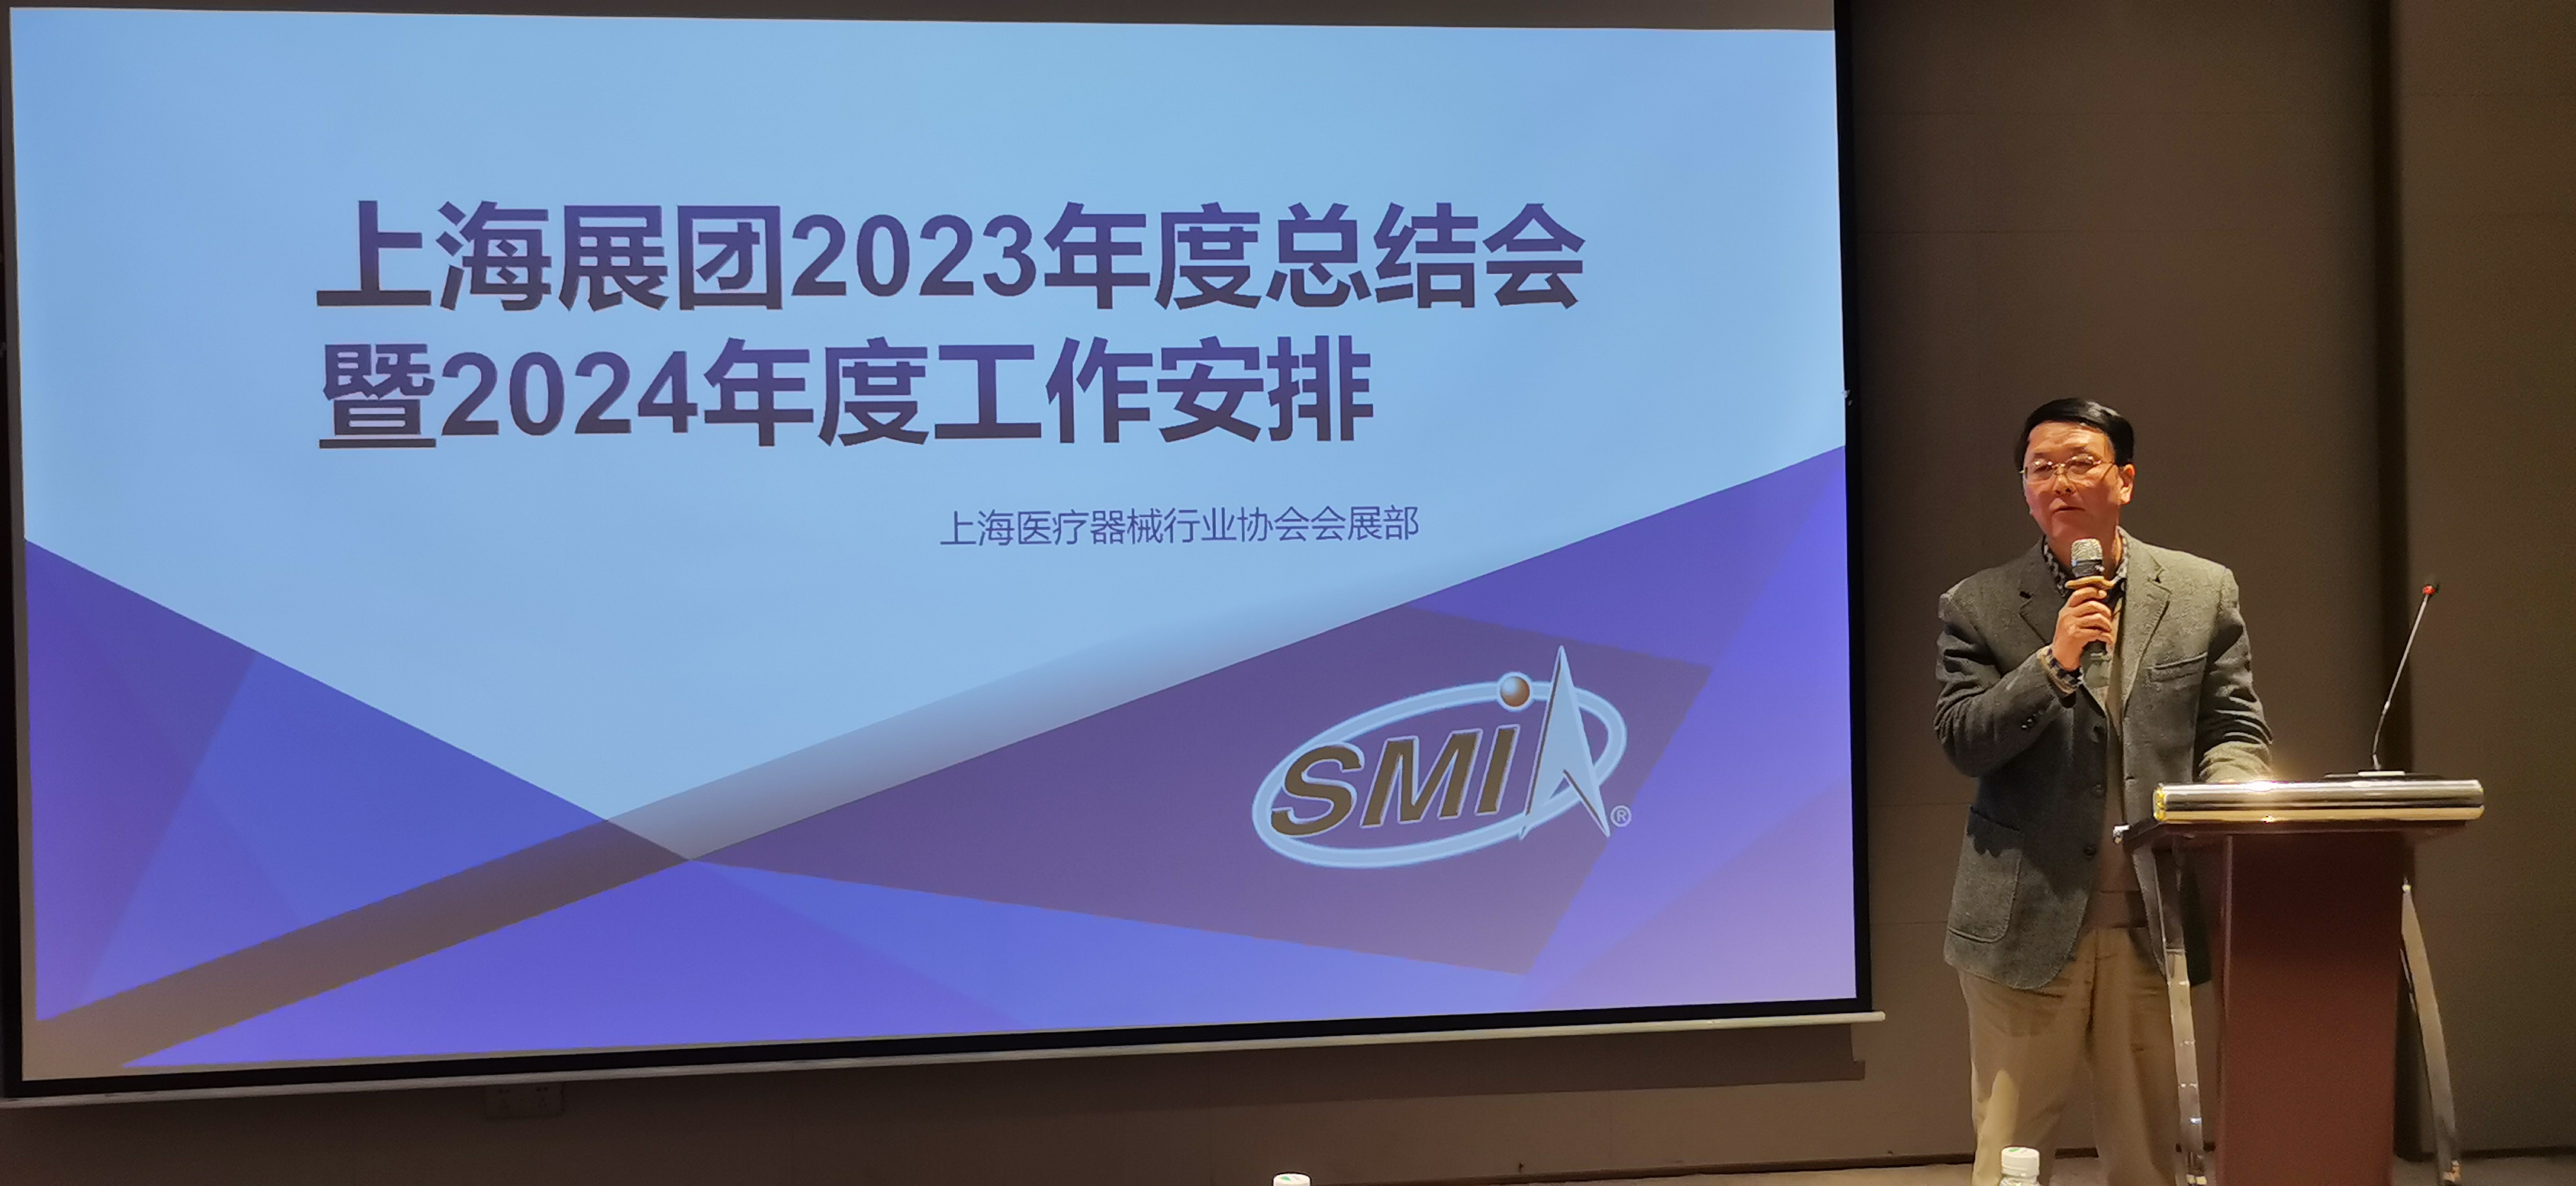 上海展团2023年度总结会暨2024年度工作安排会议顺利召开